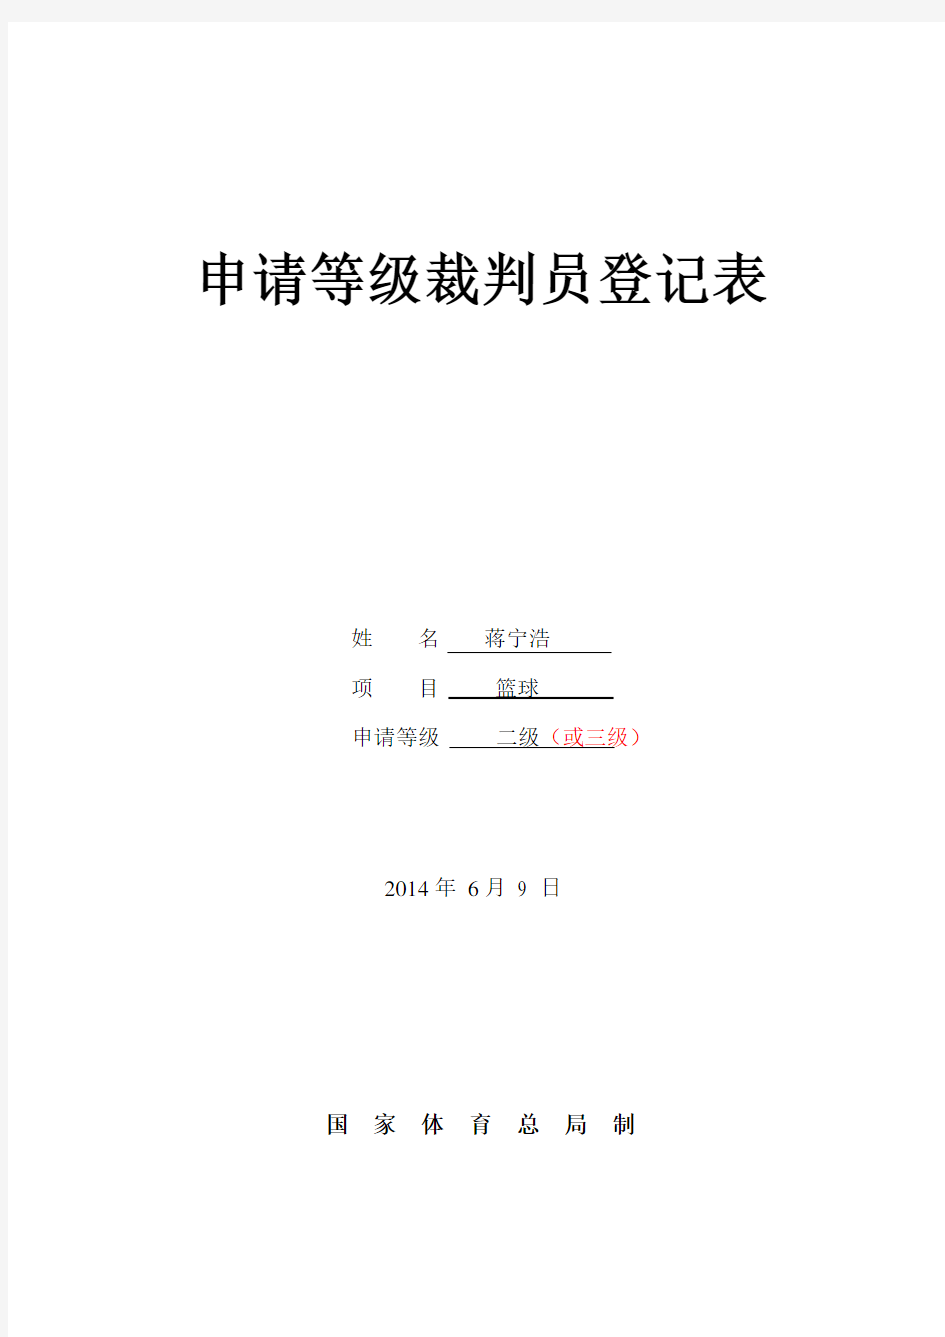 (列表)蒋宁浩-二级篮球裁判员等级申请表